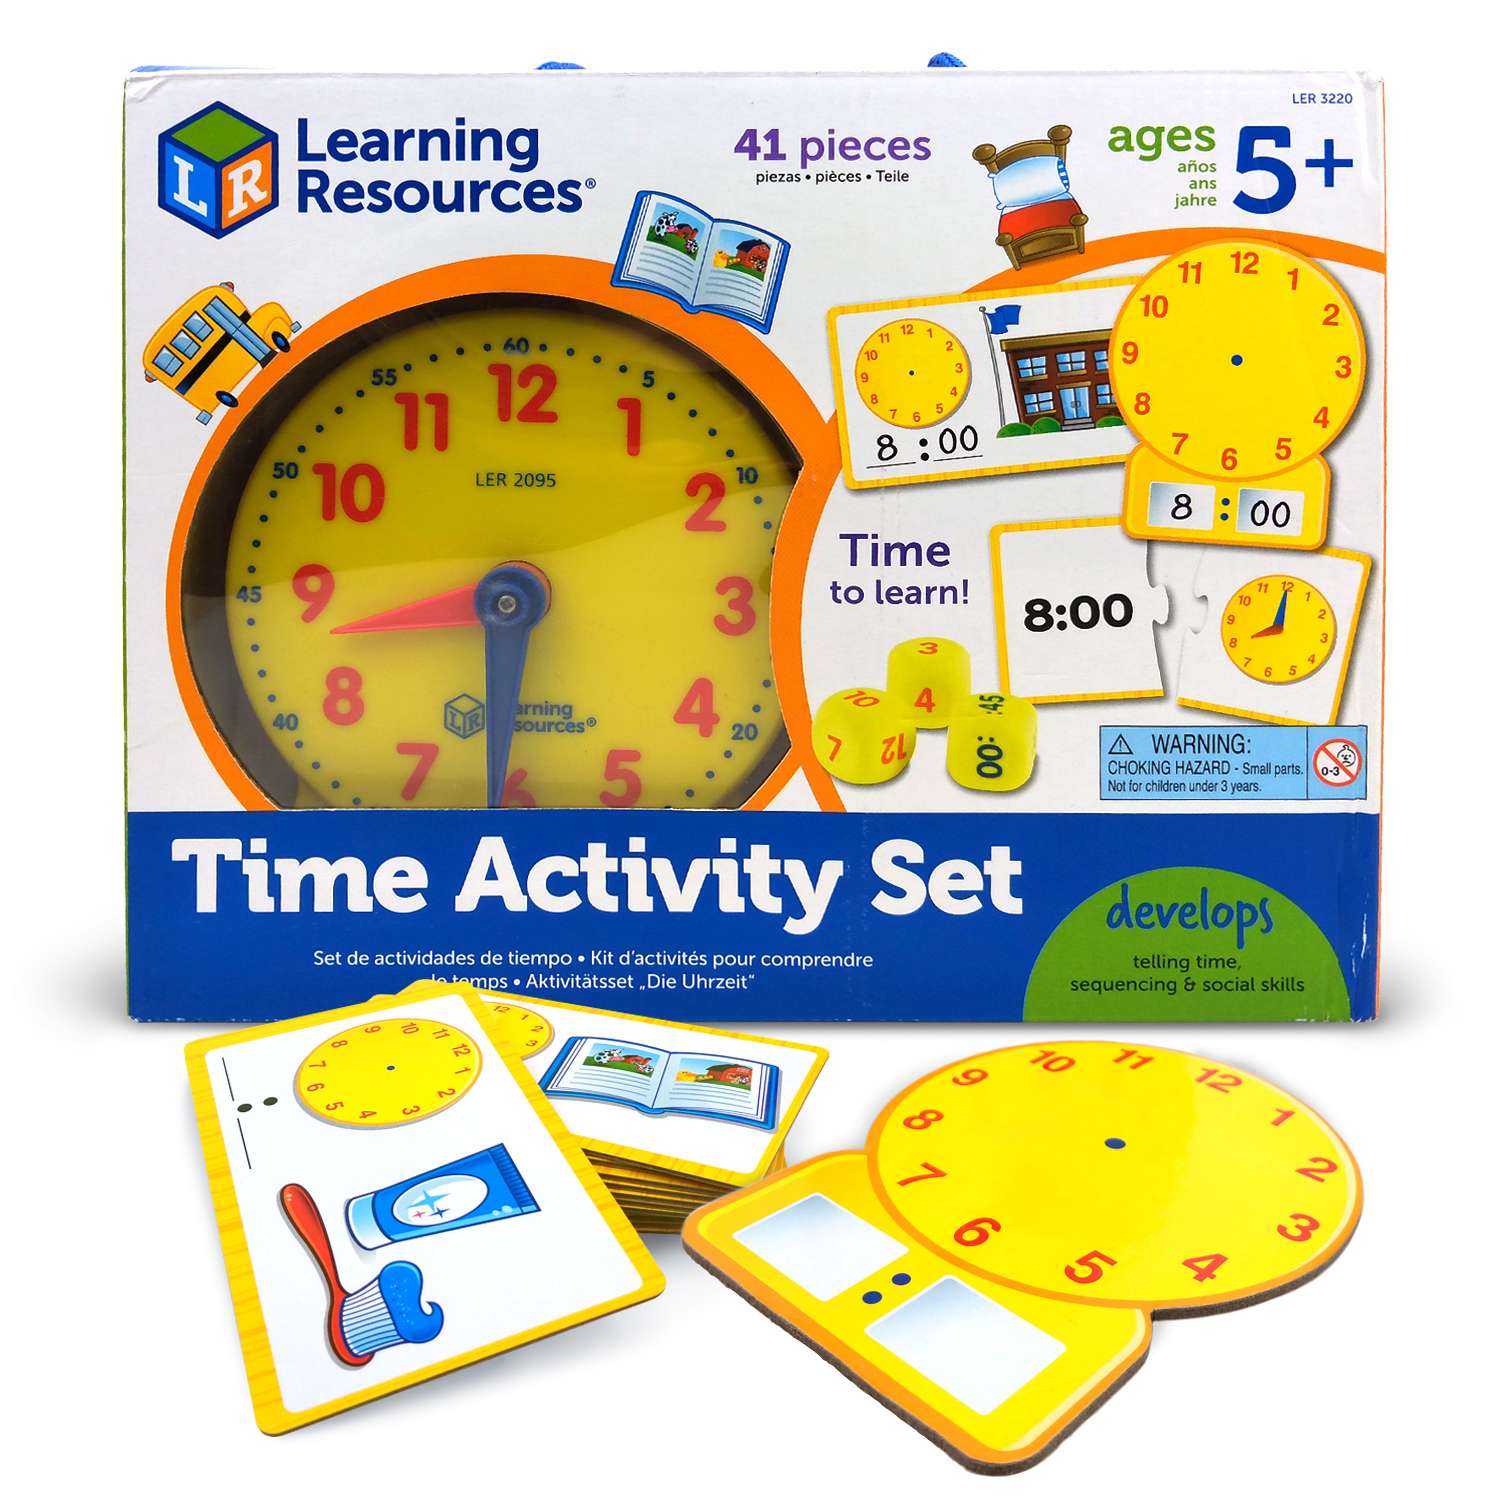 Игра обучение времени. Ler3220 развивающая игрушка "Учимся определять время" (41 элемент). Учим часы игра. Набор время Learning resources. Часы Учимся определять время Learning resources, диаметр 30 см.